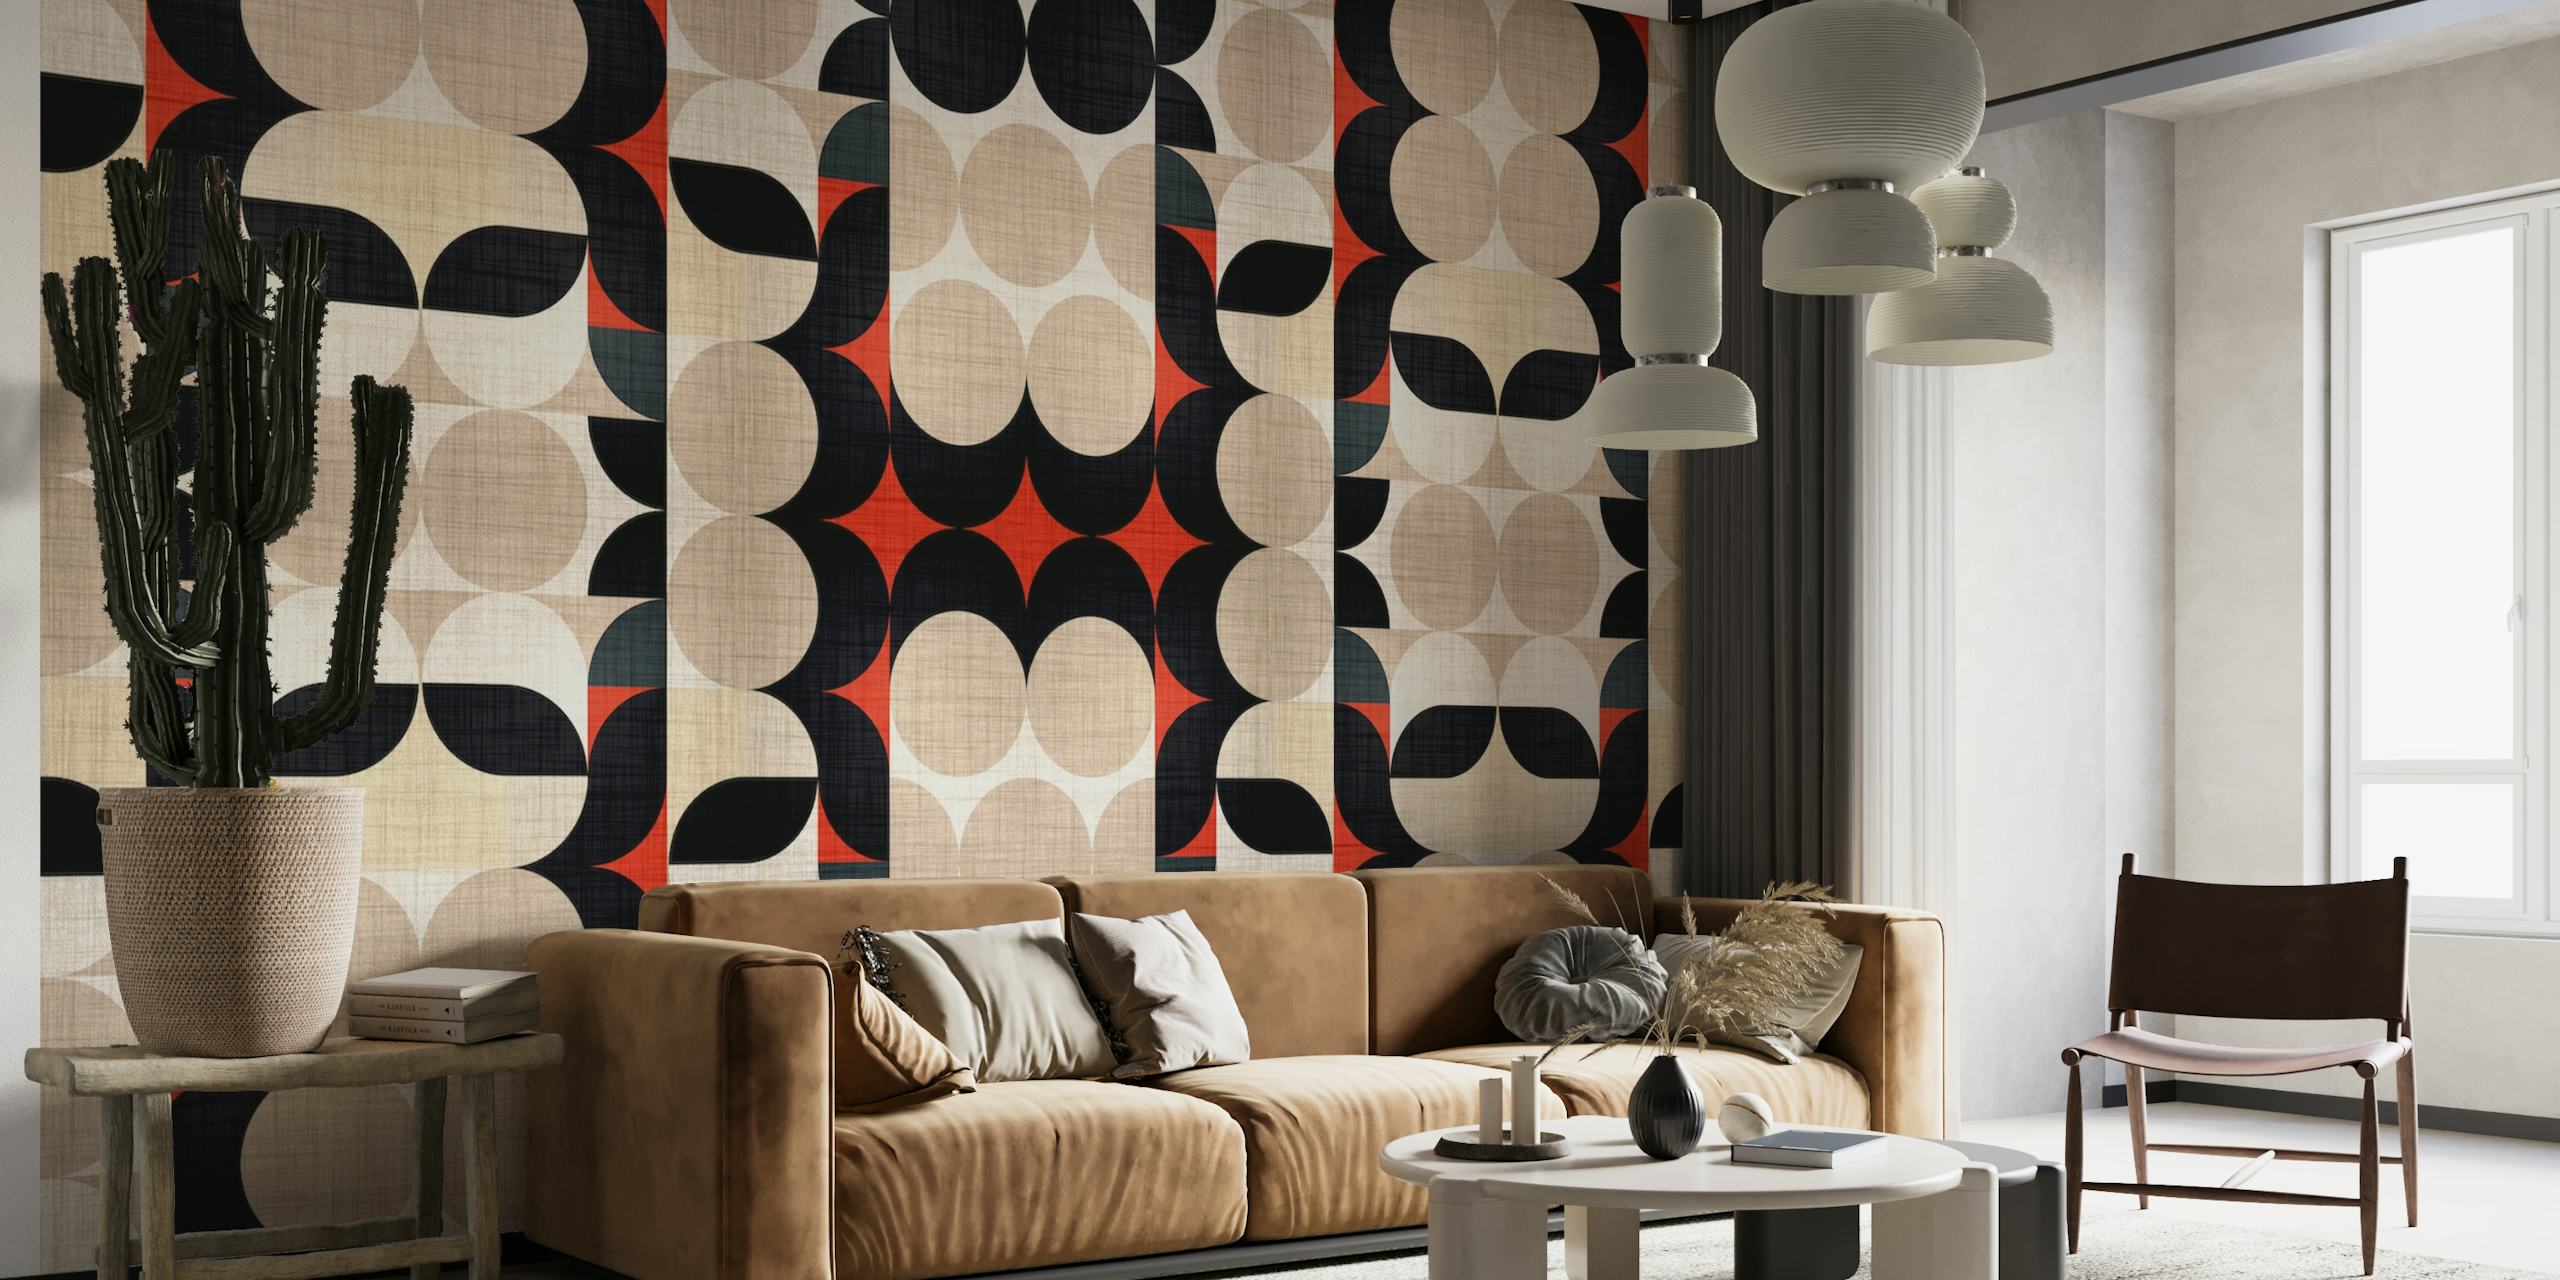 Bauhaus Fabric Pattern behang